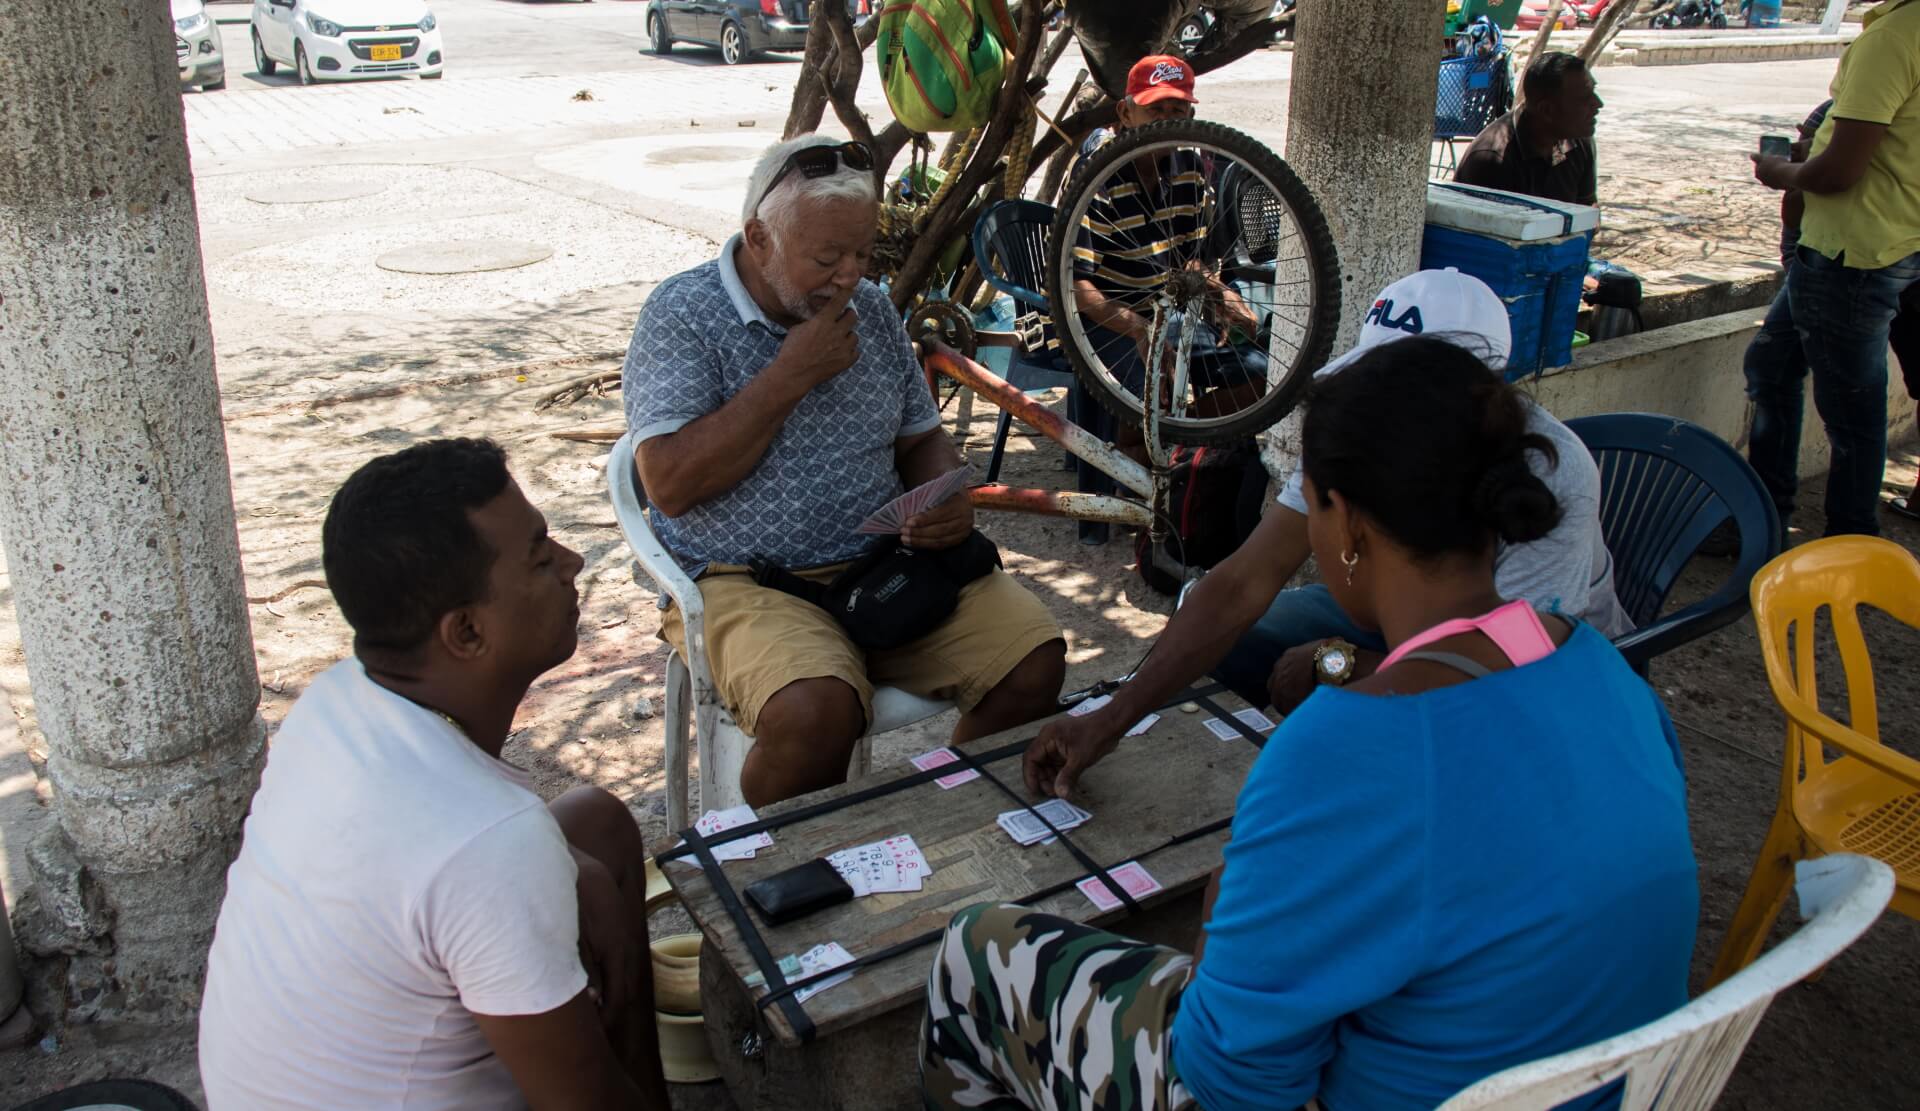 Na uliczkach Santa Marta mozna spotkac wiele osob grajacych w karty